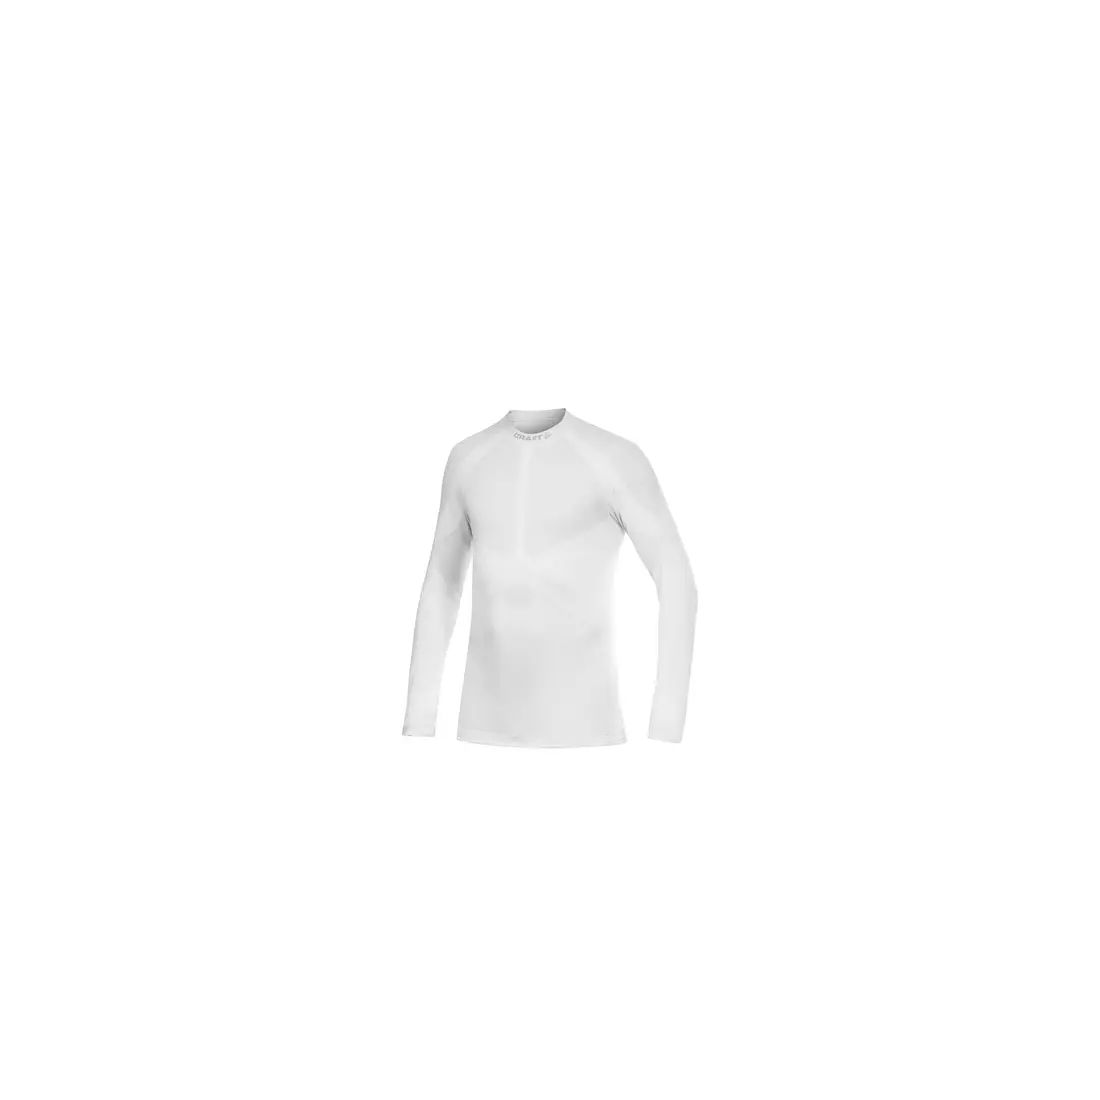 CRAFT WARM - termoprádlo - 1901637-2900 - pánske tričko